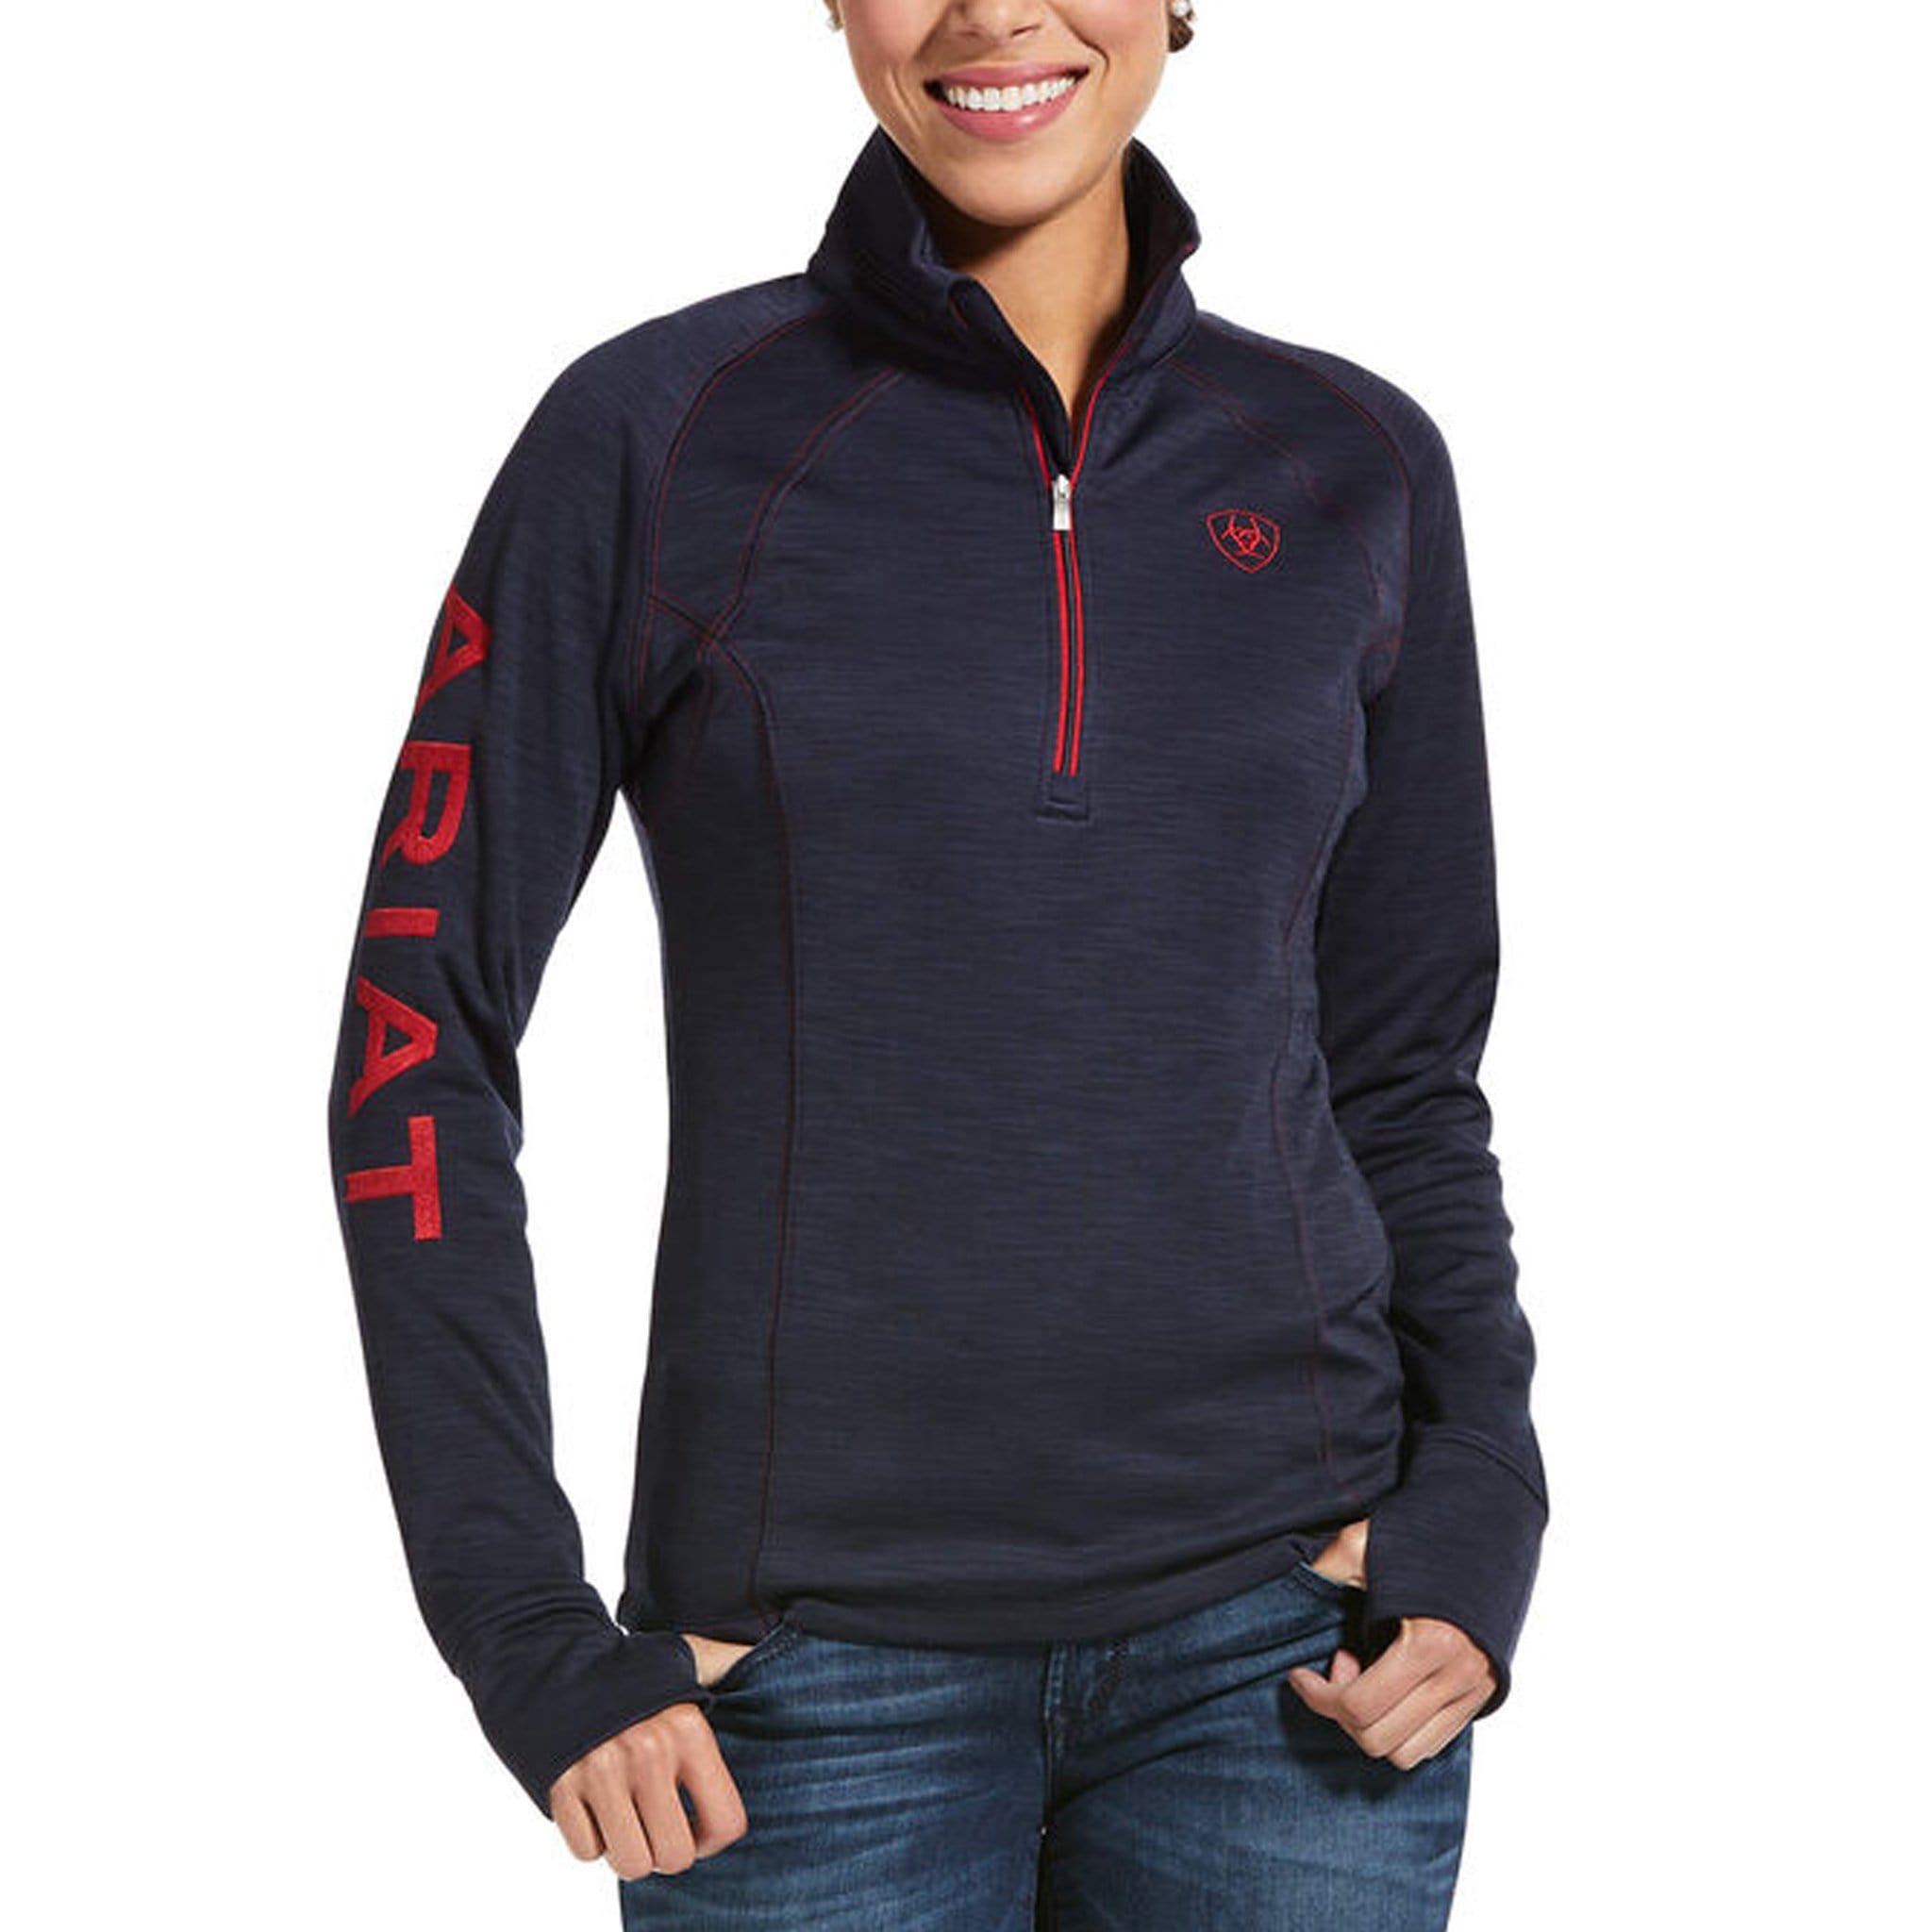 Ariat Tek Team Half Zip Sweatshirt 10032709 Navy Heather On Model Front View